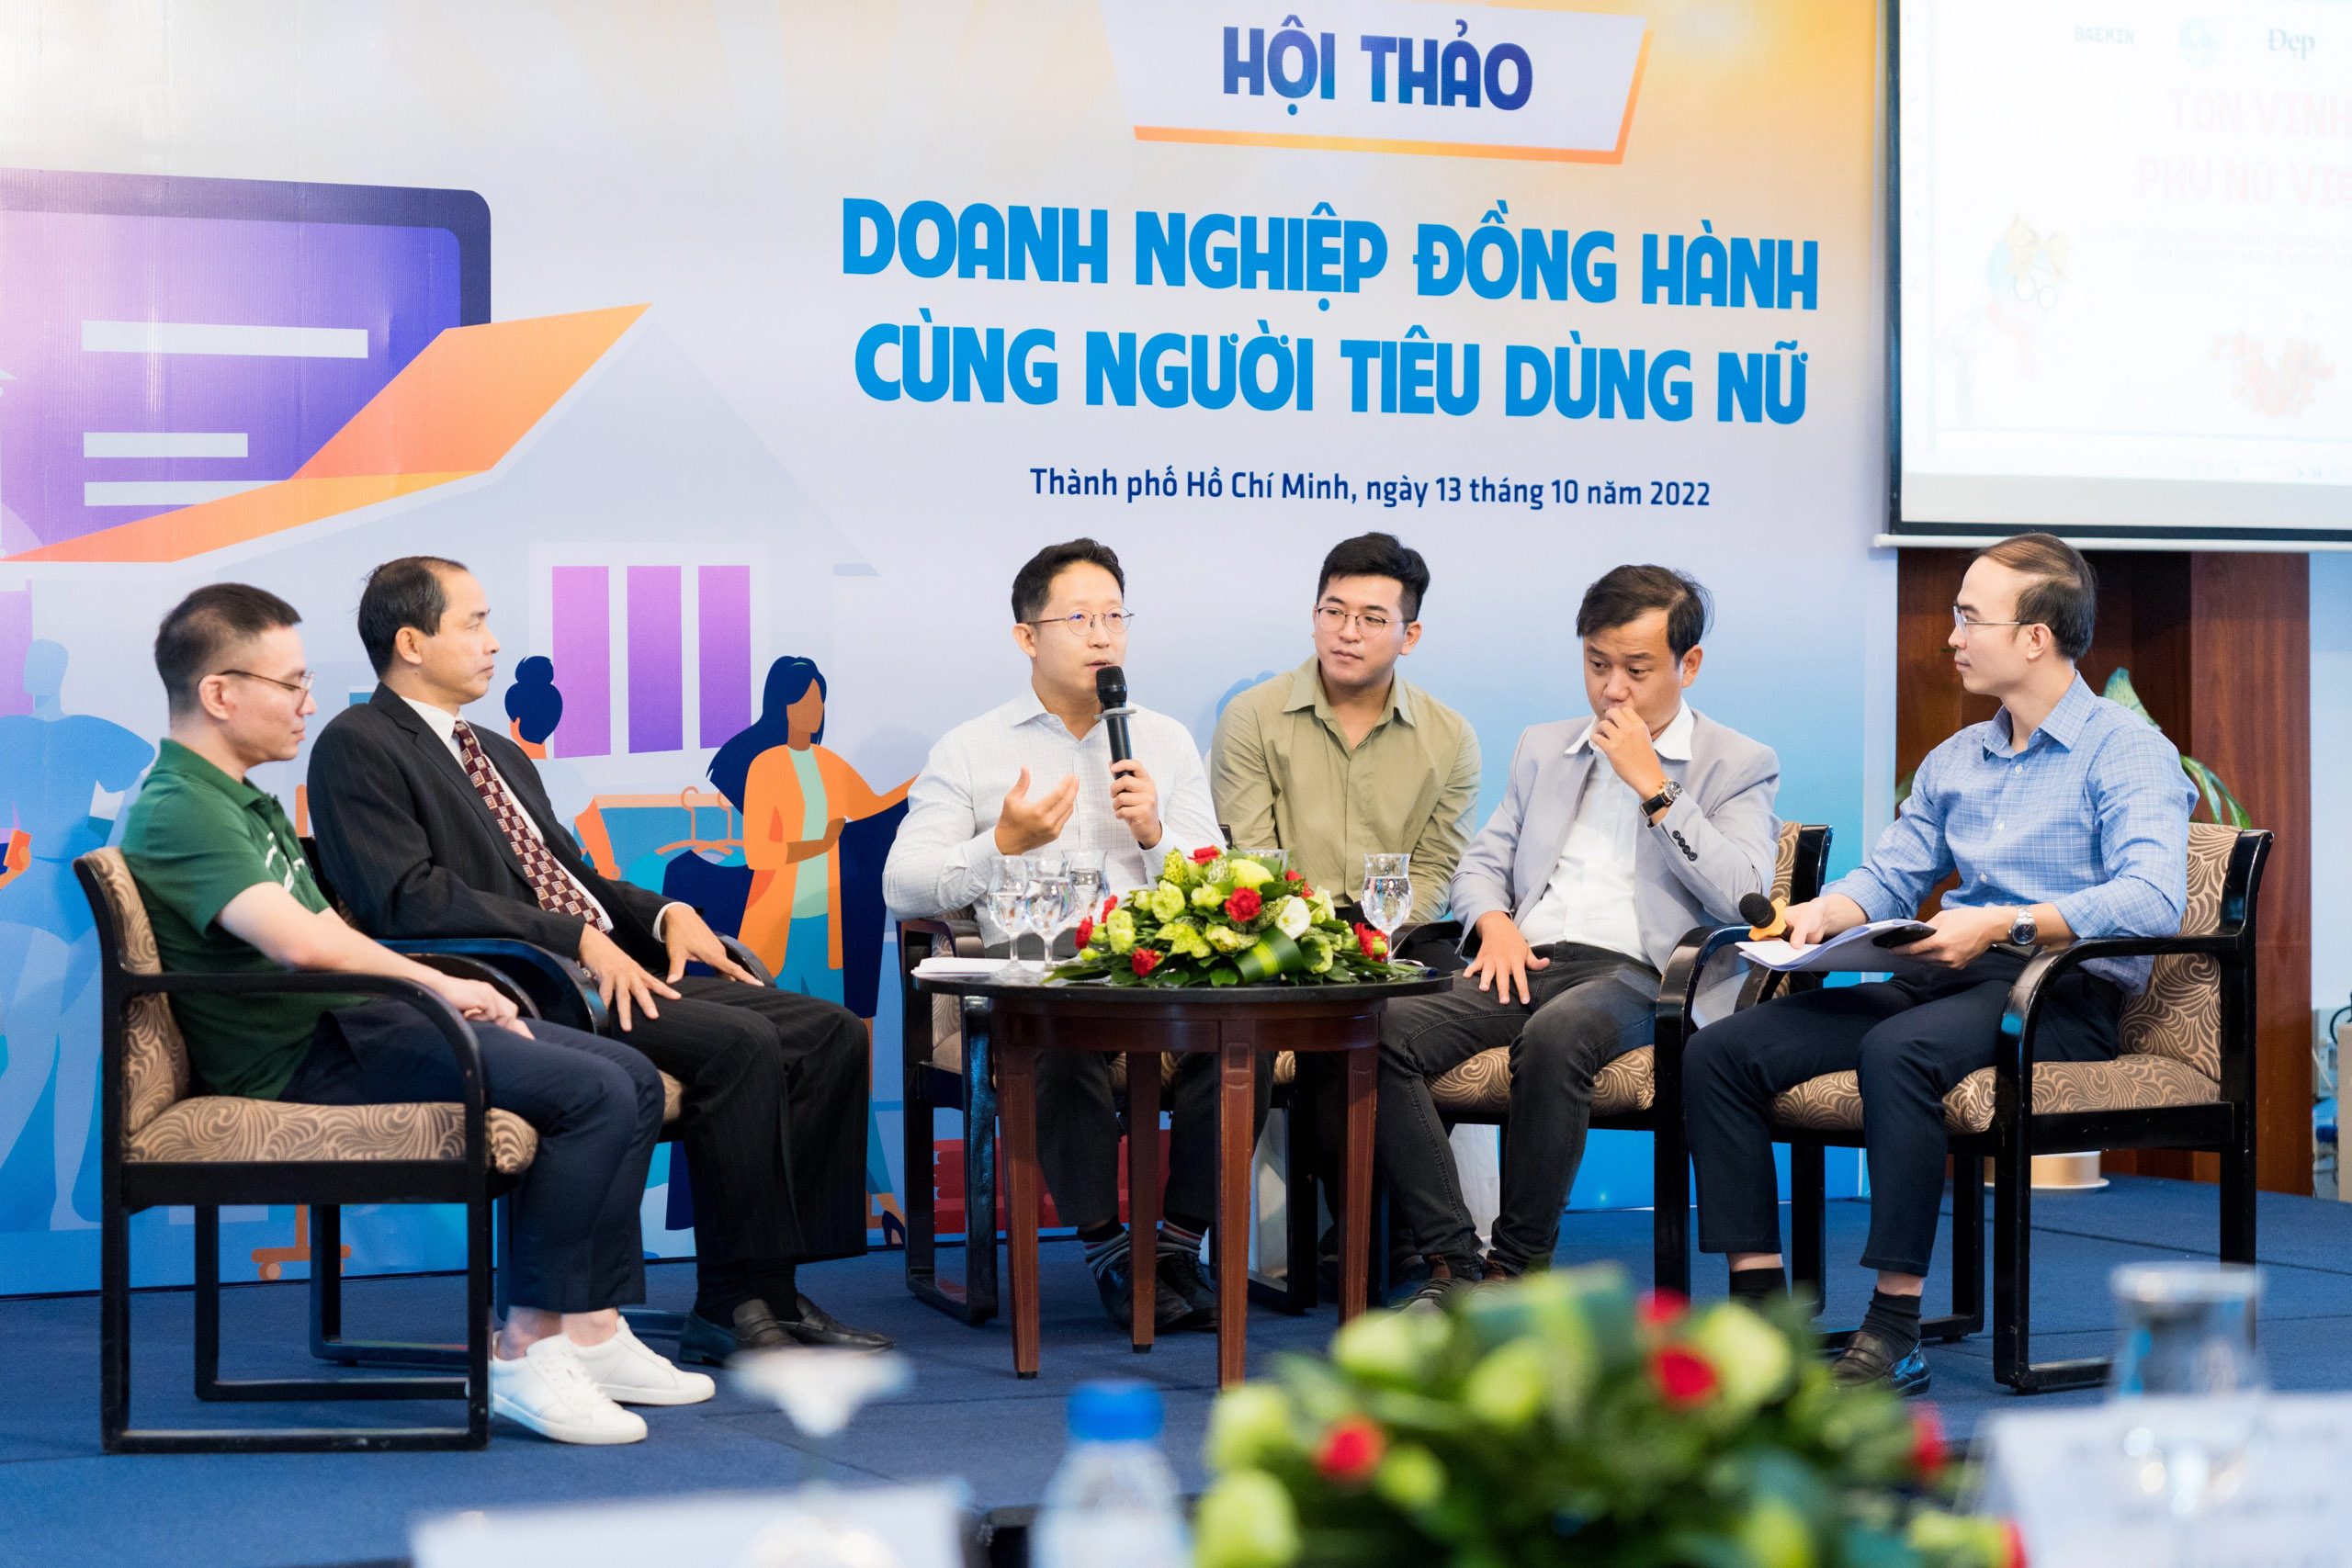 CEO BAEMIN: Nữ giới là niềm cảm hứng cho chiến lược hoạt động của chúng tôi tại Việt Nam